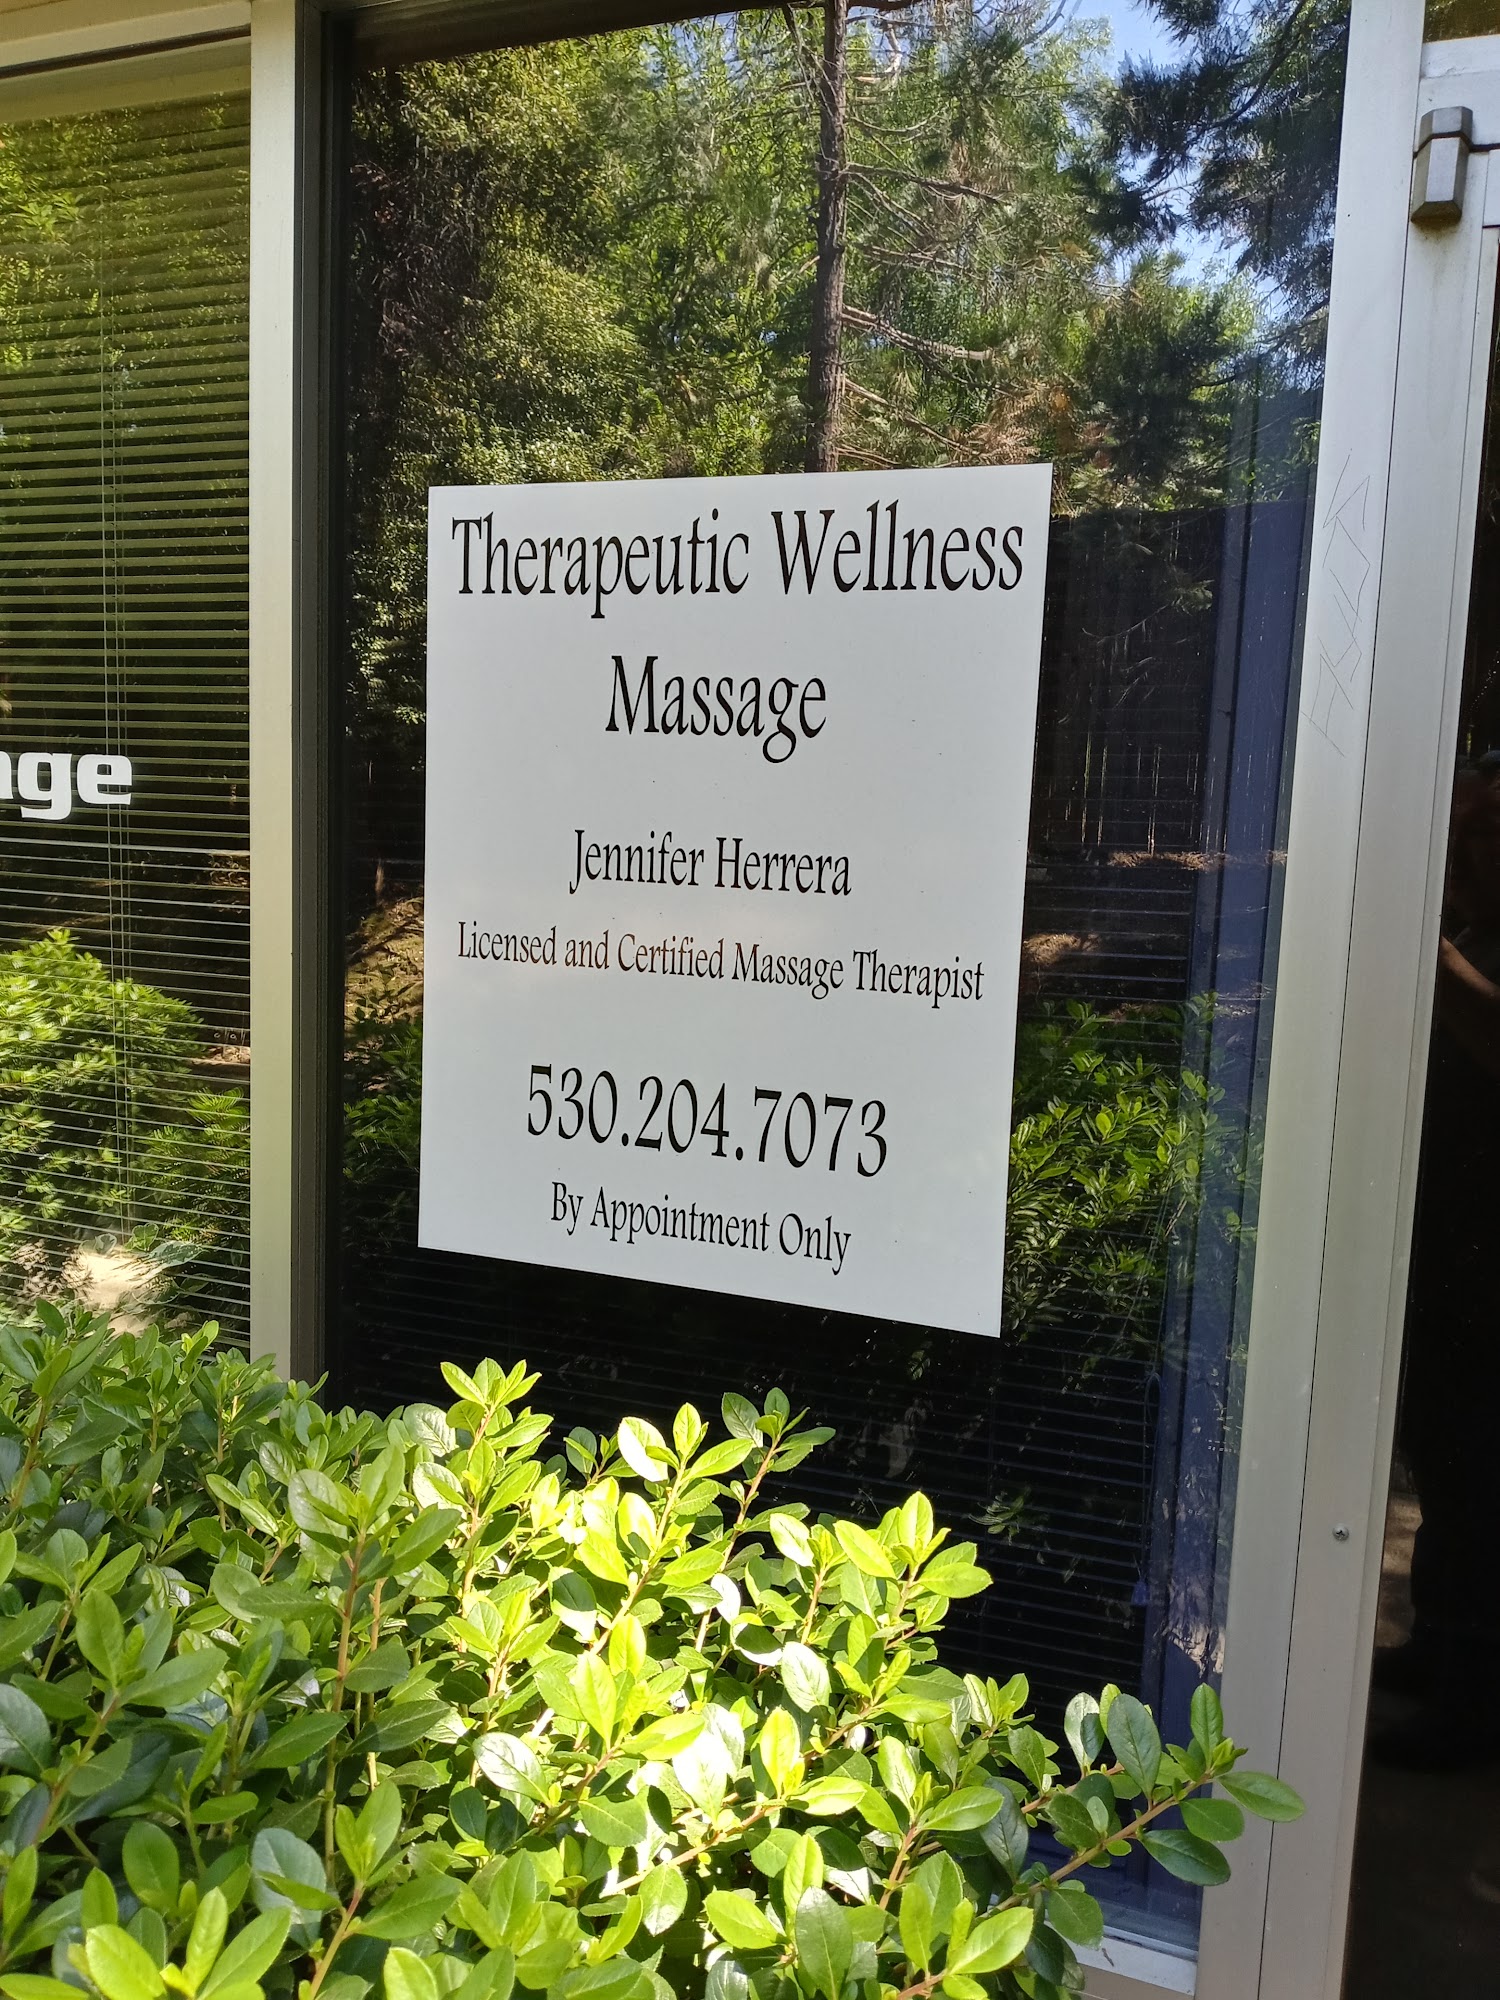 Therapeutic Wellness Massage